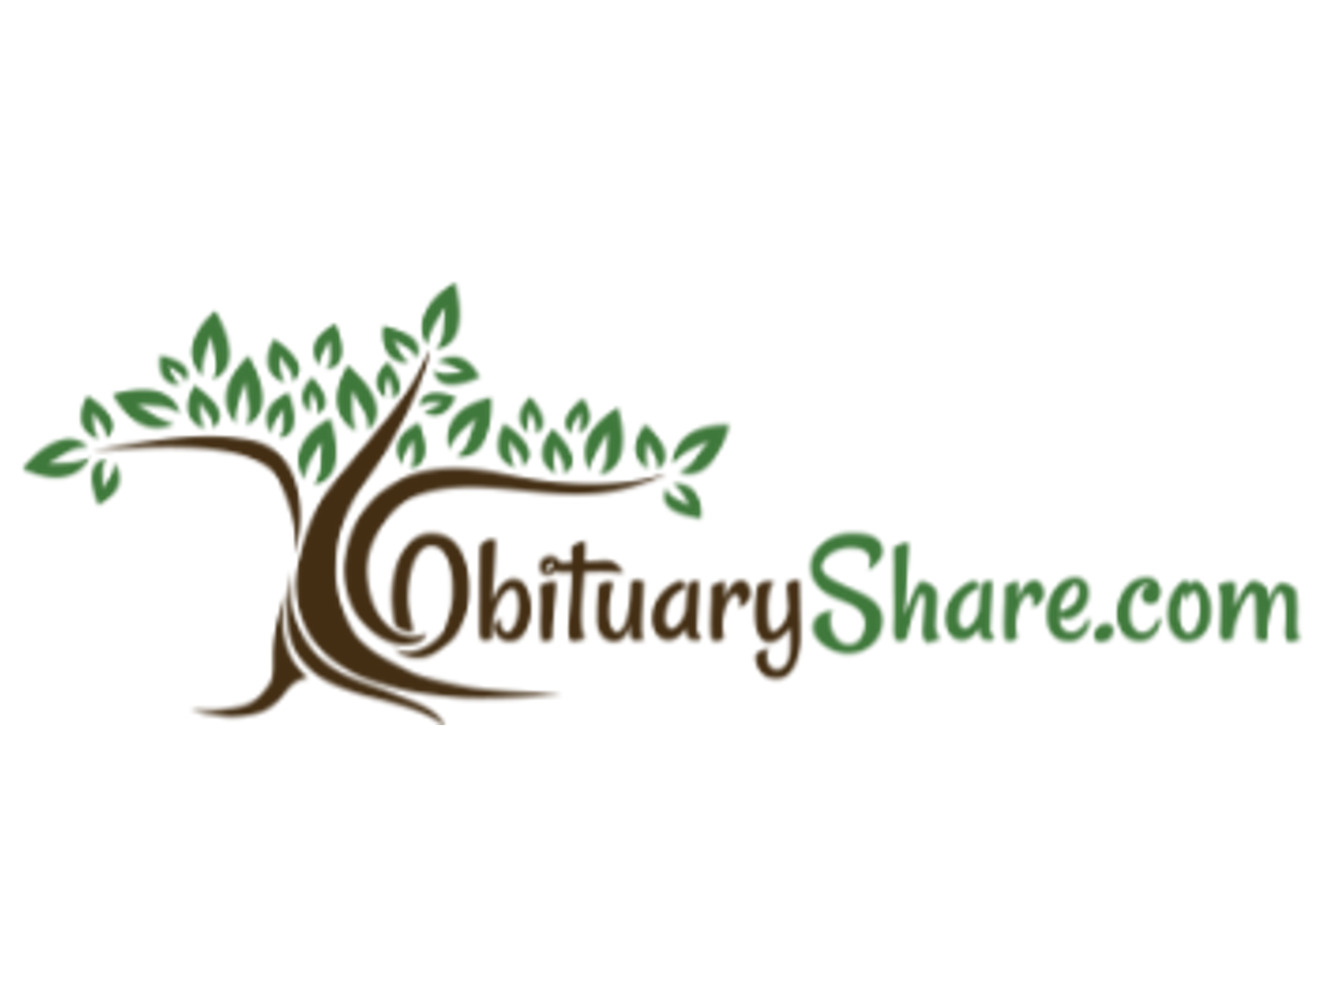 ObituaryShare.com